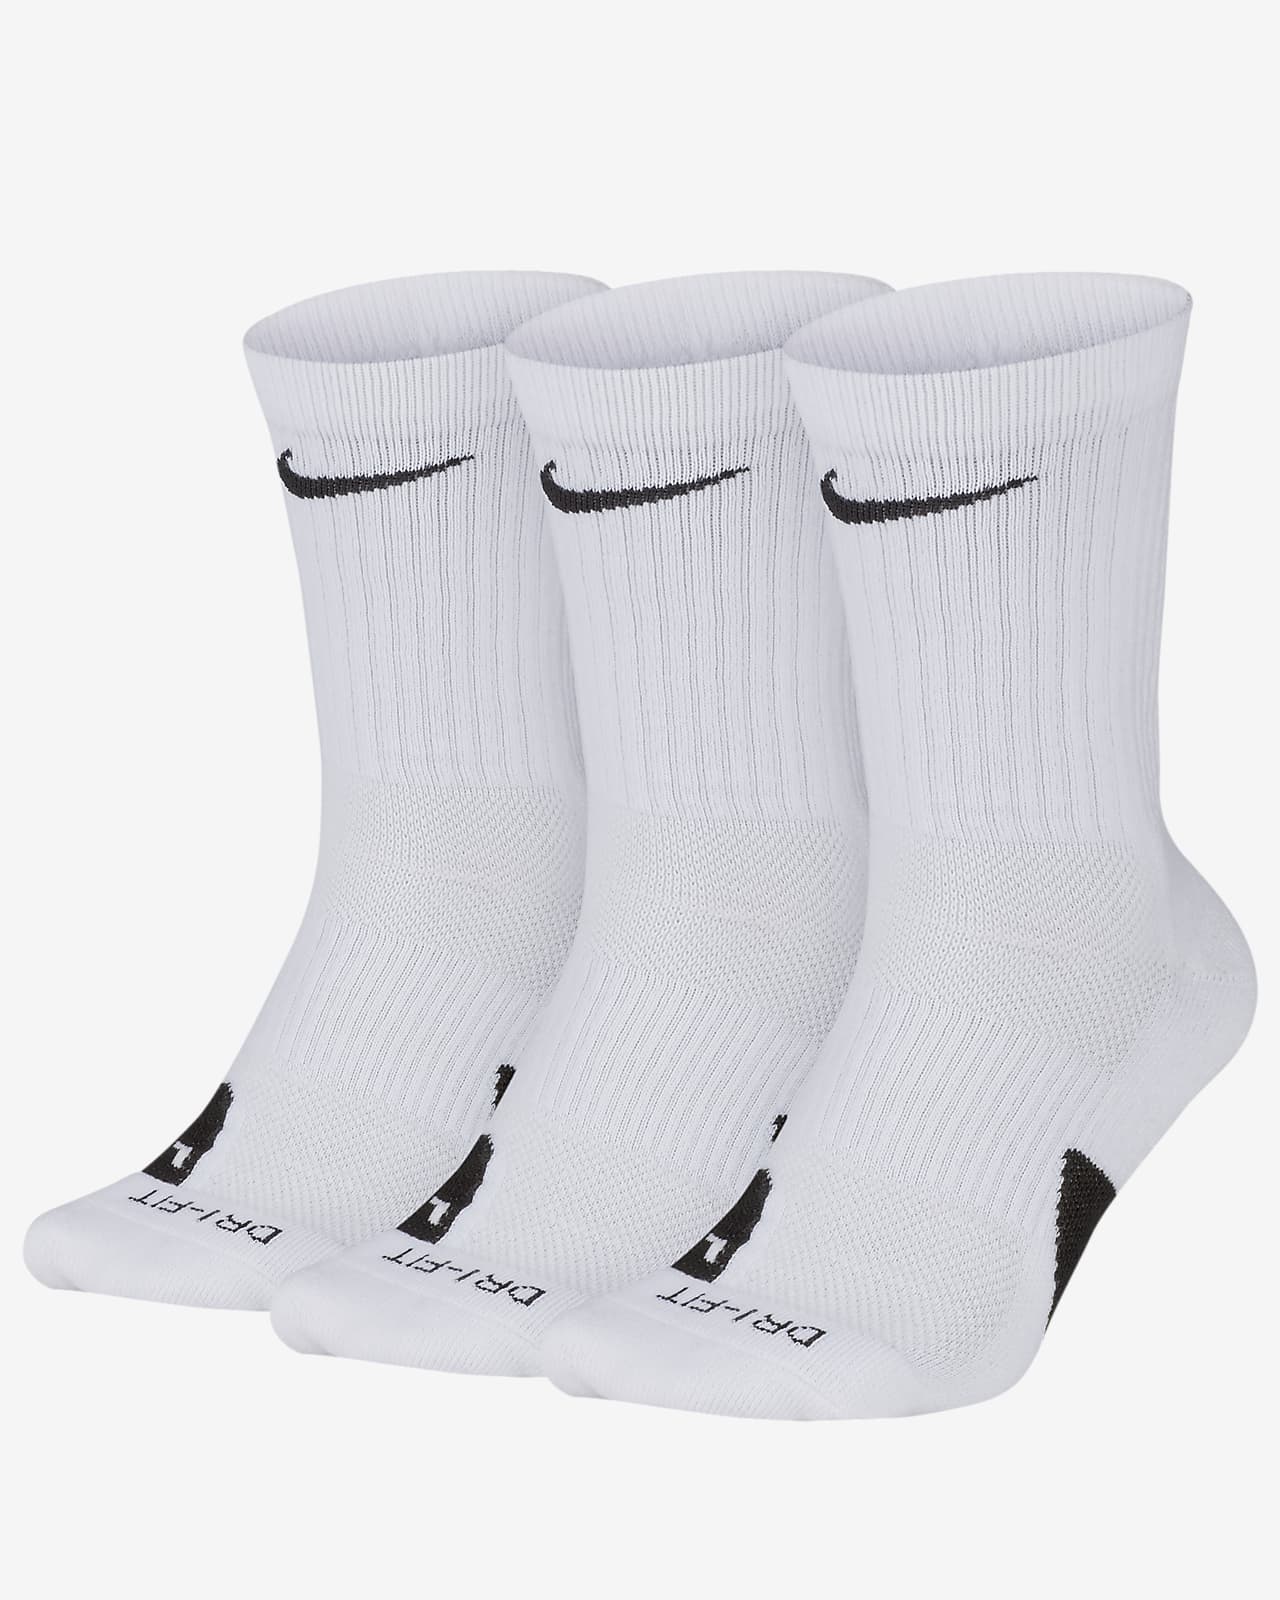 elite socks sale